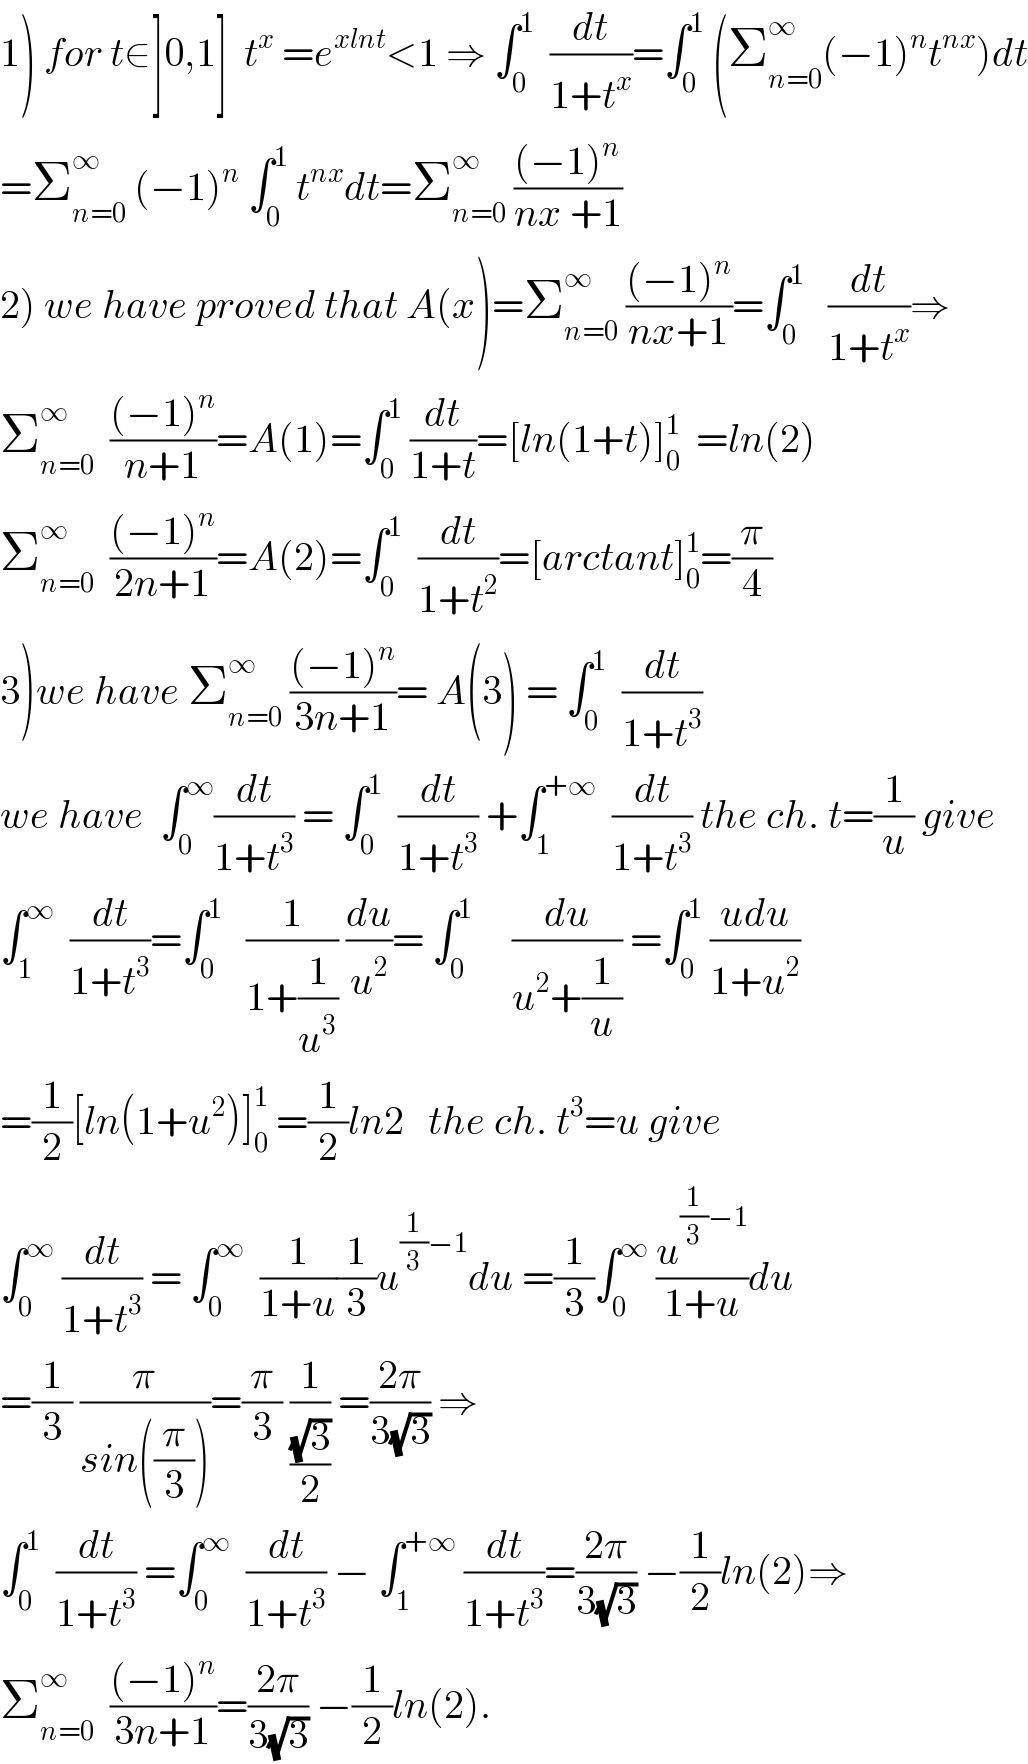 1) for t∈]0,1]  t^x  =e^(xlnt) <1 ⇒ ∫_0 ^1   (dt/(1+t^x ))=∫_0 ^1  (Σ_(n=0) ^∞ (−1)^n t^(nx) )dt  =Σ_(n=0) ^∞  (−1)^n  ∫_0 ^1  t^(nx) dt=Σ_(n=0) ^∞  (((−1)^n )/(nx +1))  2) we have proved that A(x)=Σ_(n=0) ^∞  (((−1)^n )/(nx+1))=∫_0 ^1    (dt/(1+t^x ))⇒  Σ_(n=0) ^∞   (((−1)^n )/(n+1))=A(1)=∫_0 ^1  (dt/(1+t))=[ln(1+t)]_0 ^1   =ln(2)  Σ_(n=0) ^∞   (((−1)^n )/(2n+1))=A(2)=∫_0 ^1   (dt/(1+t^2 ))=[arctant]_0 ^1 =(π/4)  3)we have Σ_(n=0) ^∞  (((−1)^n )/(3n+1))= A(3) = ∫_0 ^1   (dt/(1+t^3 ))   we have  ∫_0 ^∞ (dt/(1+t^3 )) = ∫_0 ^1   (dt/(1+t^3 )) +∫_1 ^(+∞)   (dt/(1+t^3 )) the ch. t=(1/u) give  ∫_1 ^∞   (dt/(1+t^3 ))=∫_0 ^1    (1/(1+(1/u^3 ))) (du/u^2 )= ∫_0 ^1      (du/(u^2 +(1/u))) =∫_0 ^1  ((udu)/(1+u^2 ))  =(1/2)[ln(1+u^2 )]_0 ^1  =(1/2)ln2   the ch. t^3 =u give  ∫_0 ^∞  (dt/(1+t^3 )) = ∫_0 ^∞   (1/(1+u))(1/3)u^((1/3)−1) du =(1/3)∫_0 ^∞  (u^((1/3)−1) /(1+u))du  =(1/3) (π/(sin((π/3))))=(π/3) (1/((√3)/2)) =((2π)/(3(√3))) ⇒  ∫_0 ^1   (dt/(1+t^3 )) =∫_0 ^∞   (dt/(1+t^3 )) − ∫_1 ^(+∞)  (dt/(1+t^3 ))=((2π)/(3(√3))) −(1/2)ln(2)⇒  Σ_(n=0) ^∞   (((−1)^n )/(3n+1))=((2π)/(3(√3))) −(1/2)ln(2).  